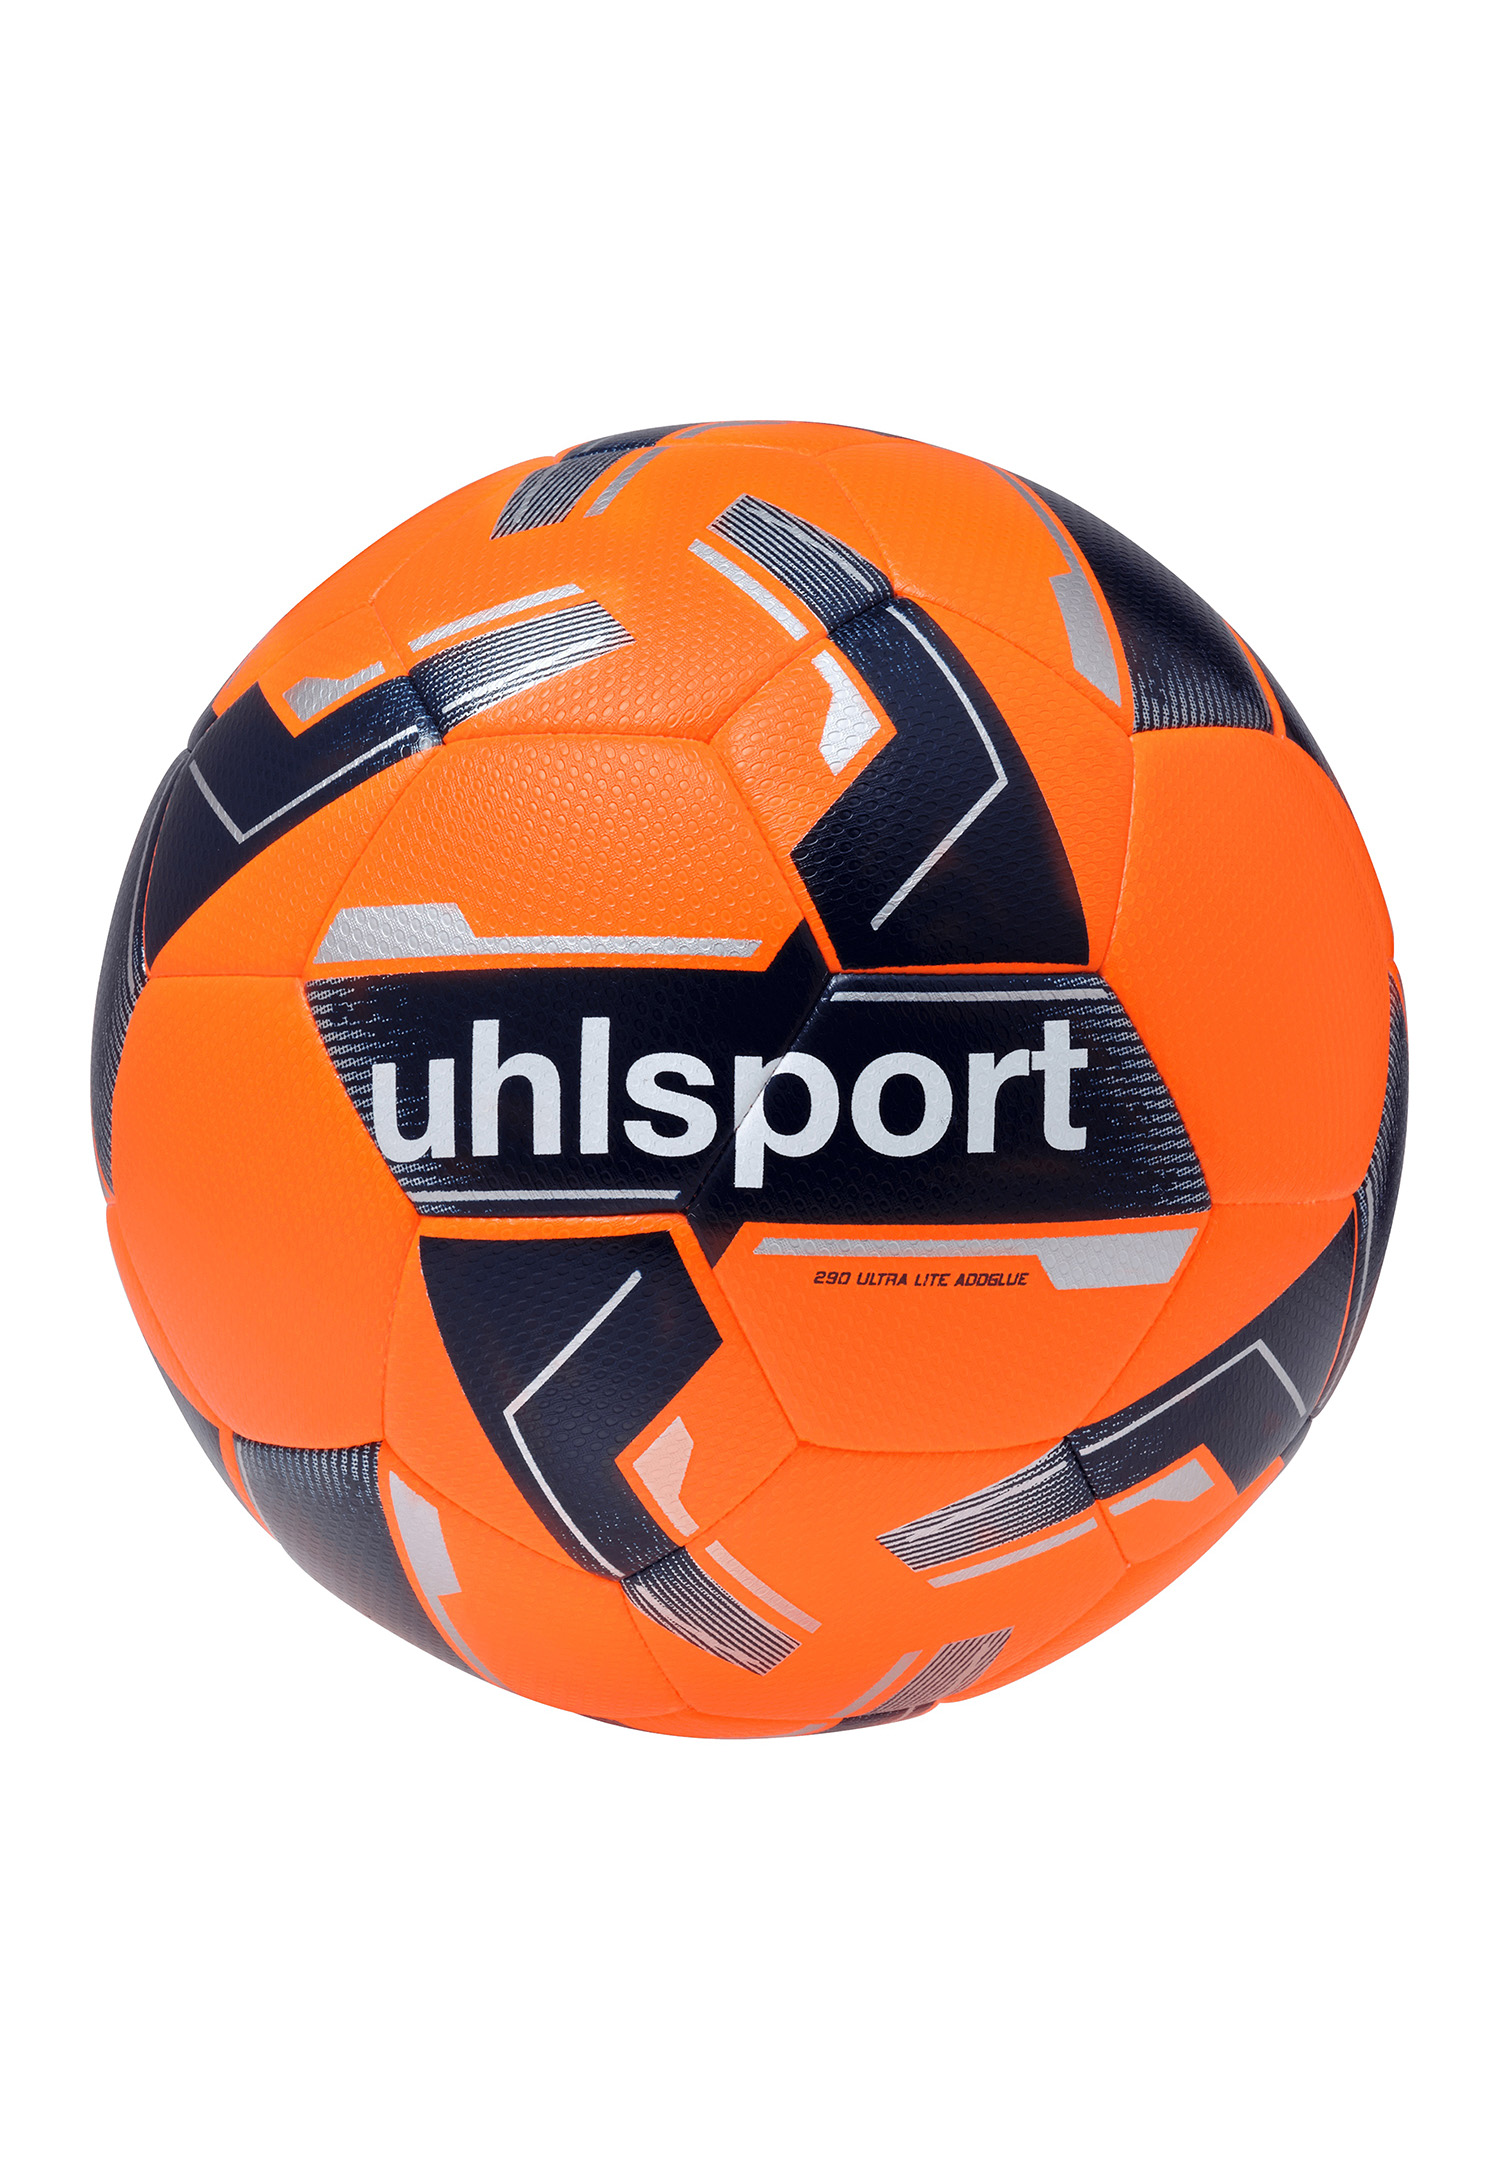 Uhlsport 290 ULTRA LITE ADDGLUE Fussball Kinder Gr.3 100175901